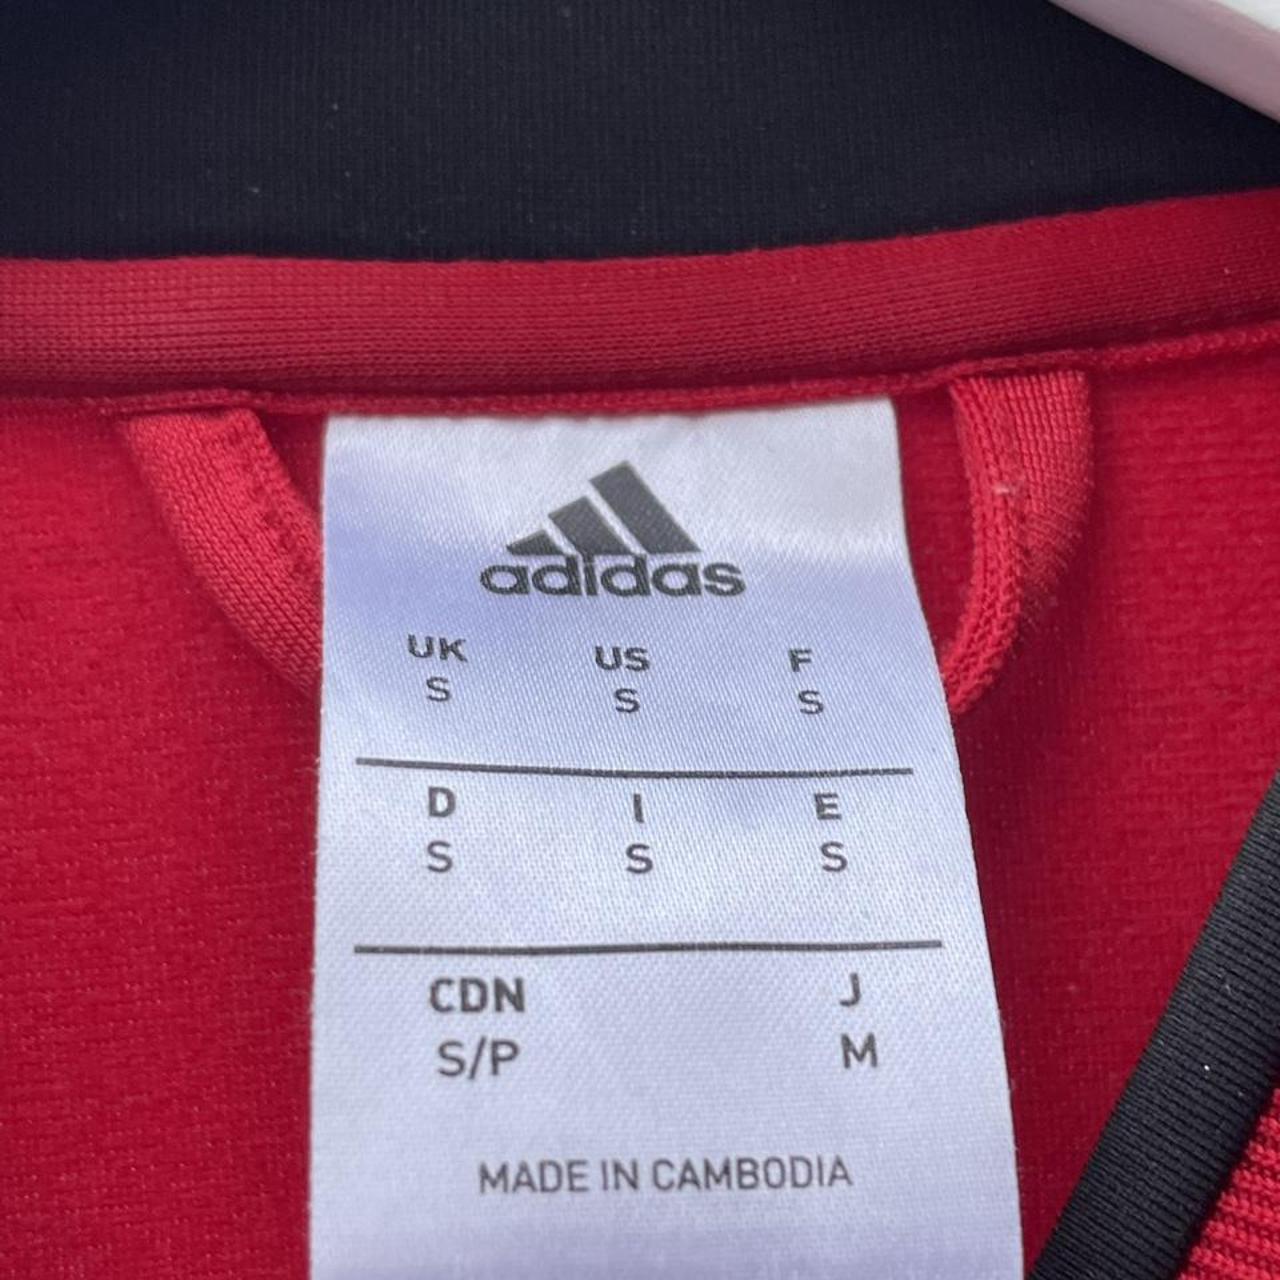 Product Image 4 - Adidas track jacket 





#adidas#trackjacket#red#sports